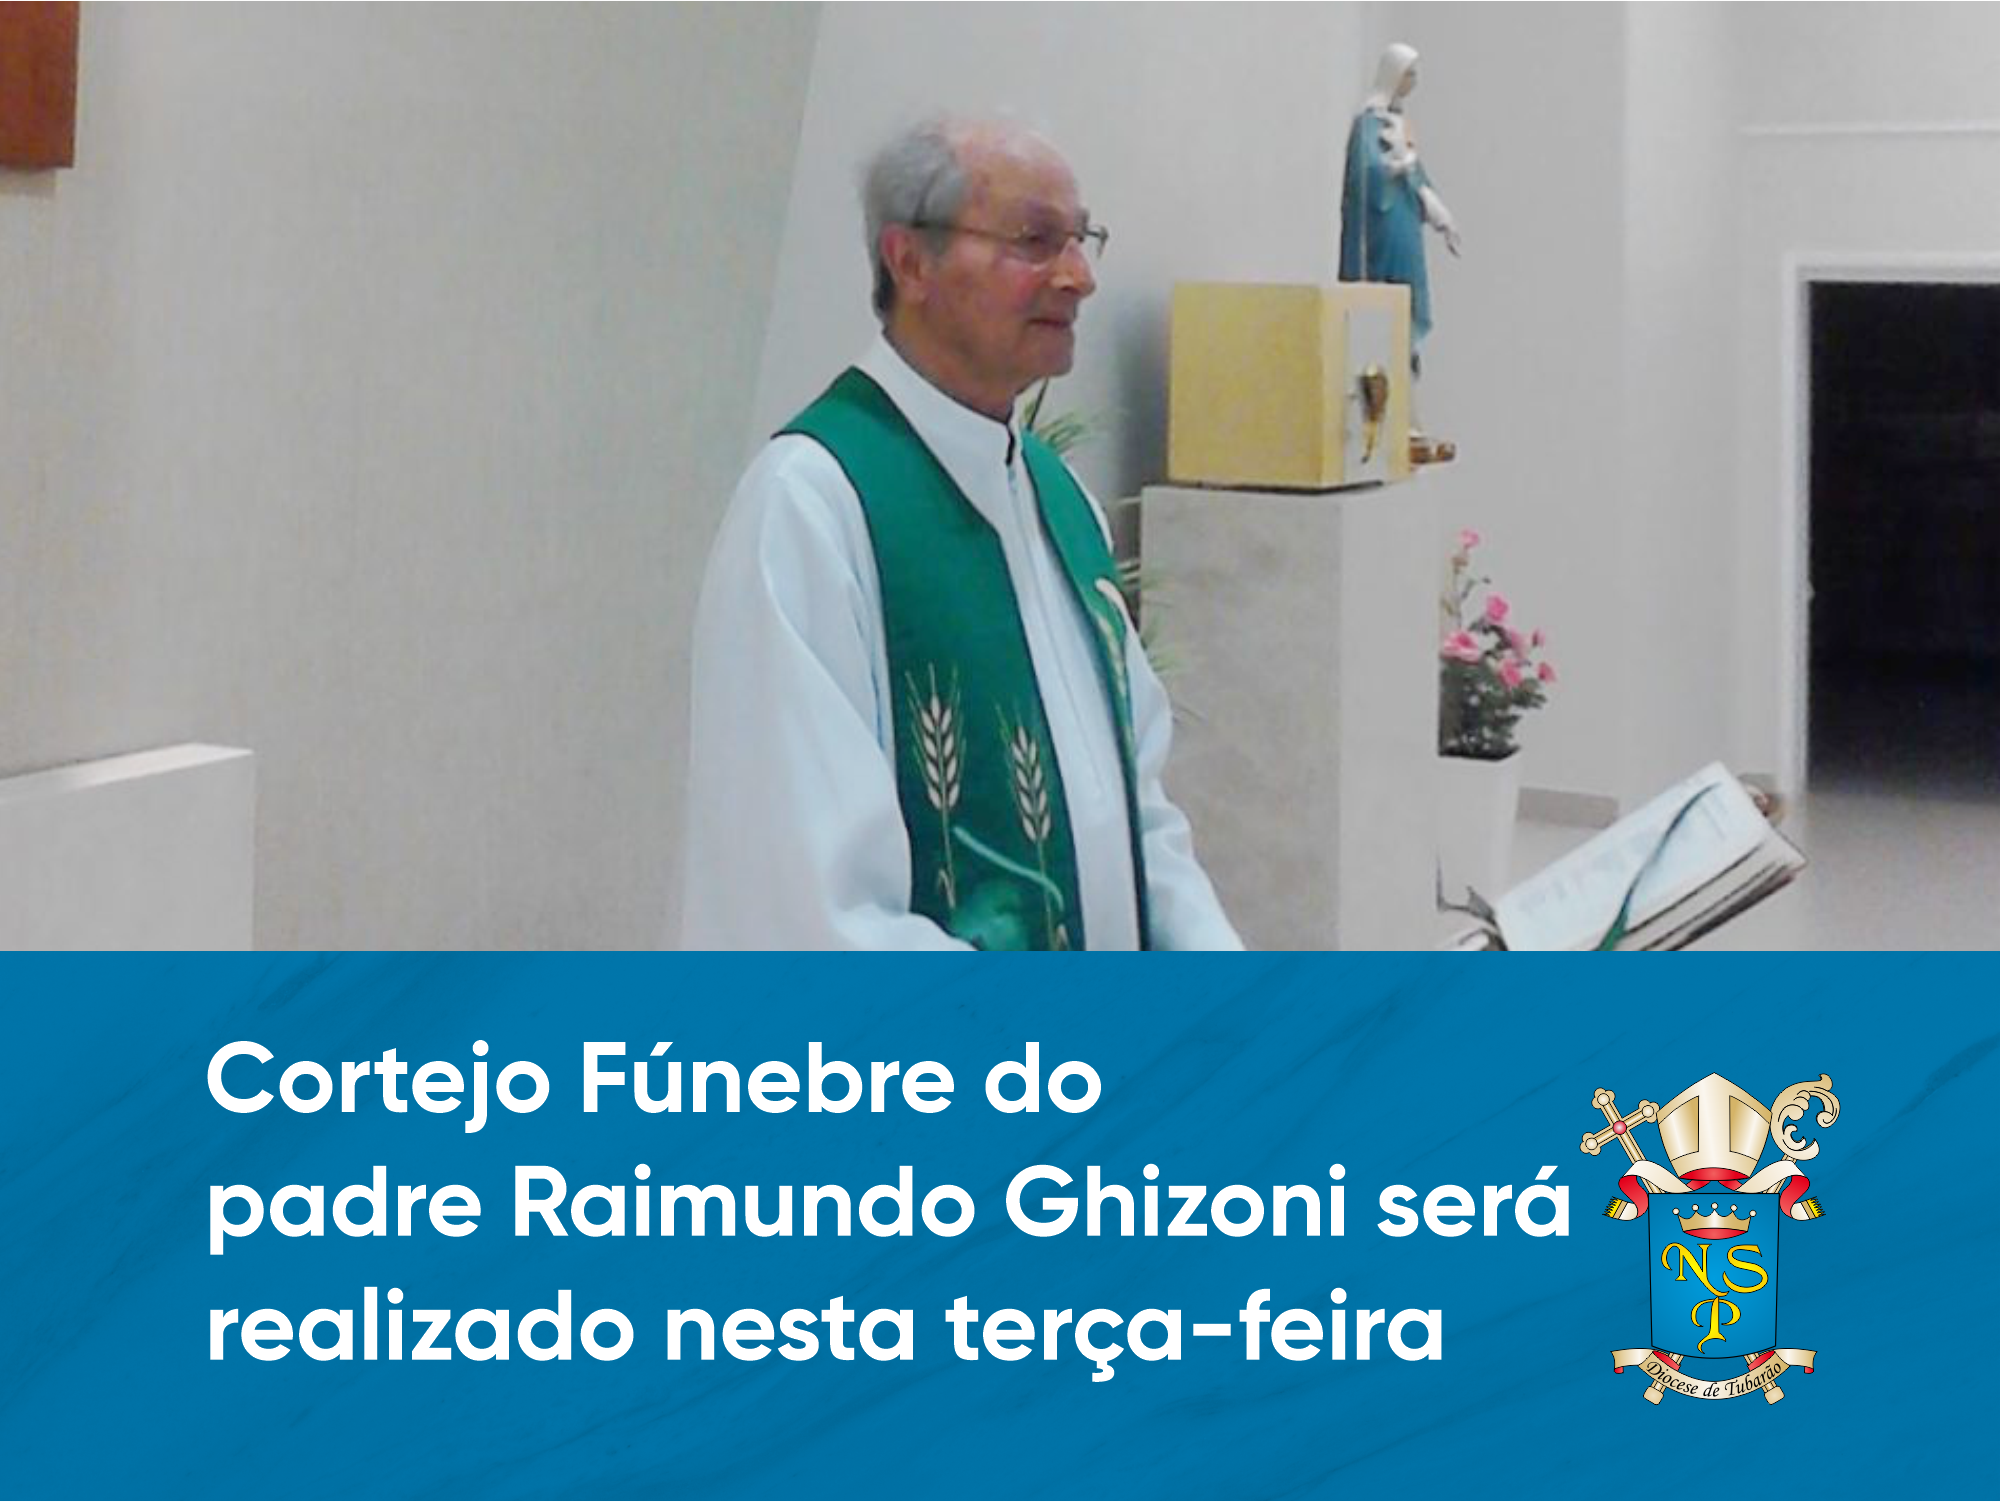 Cortejo Fúnebre do padre Raimundo Ghizoni será realizado nesta terça-feira